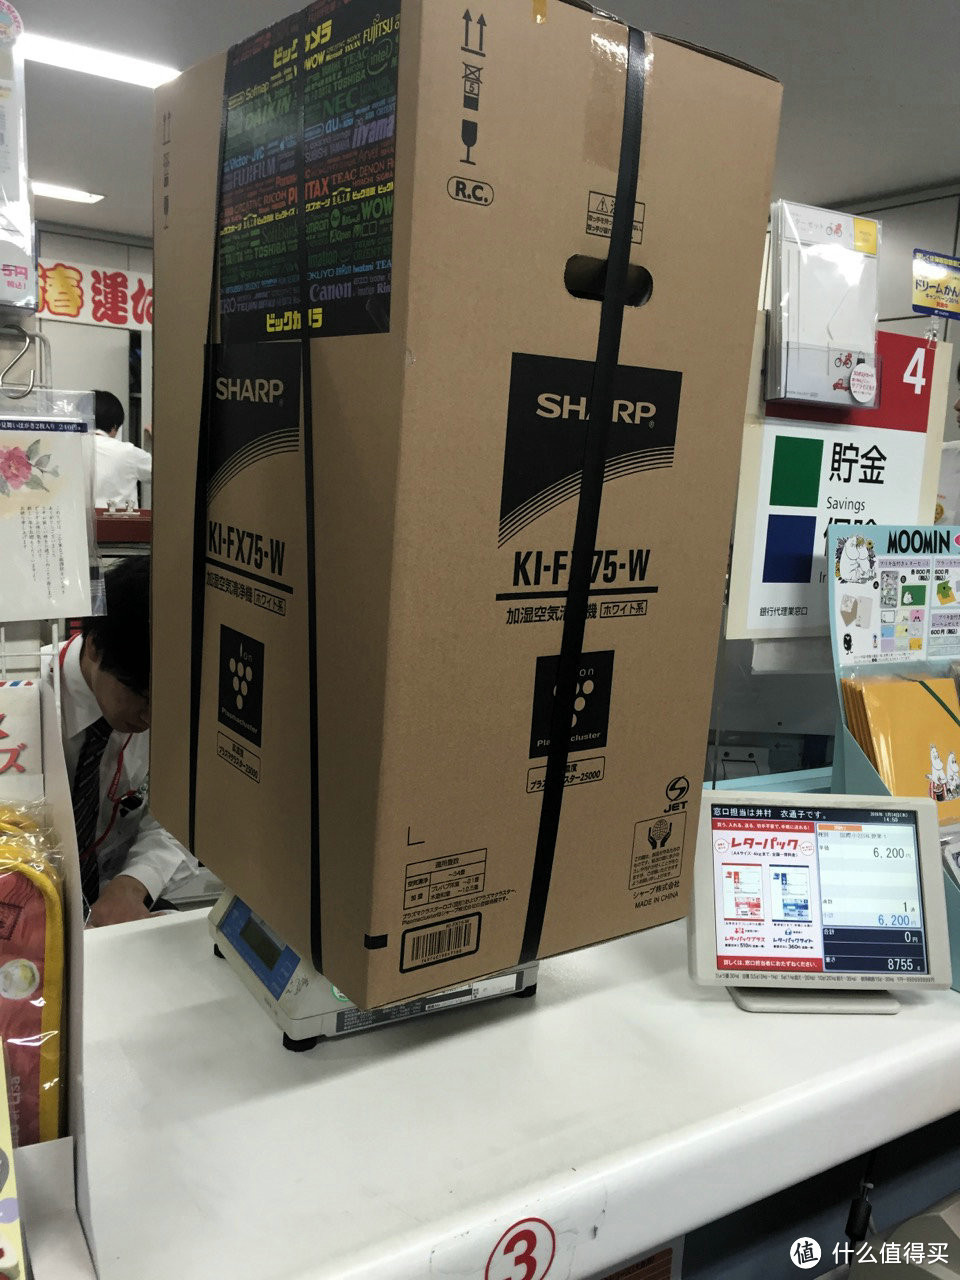 抛开转运自己寄：日本自由行去邮局寄包裹 & 夏普空气净化器简单开箱